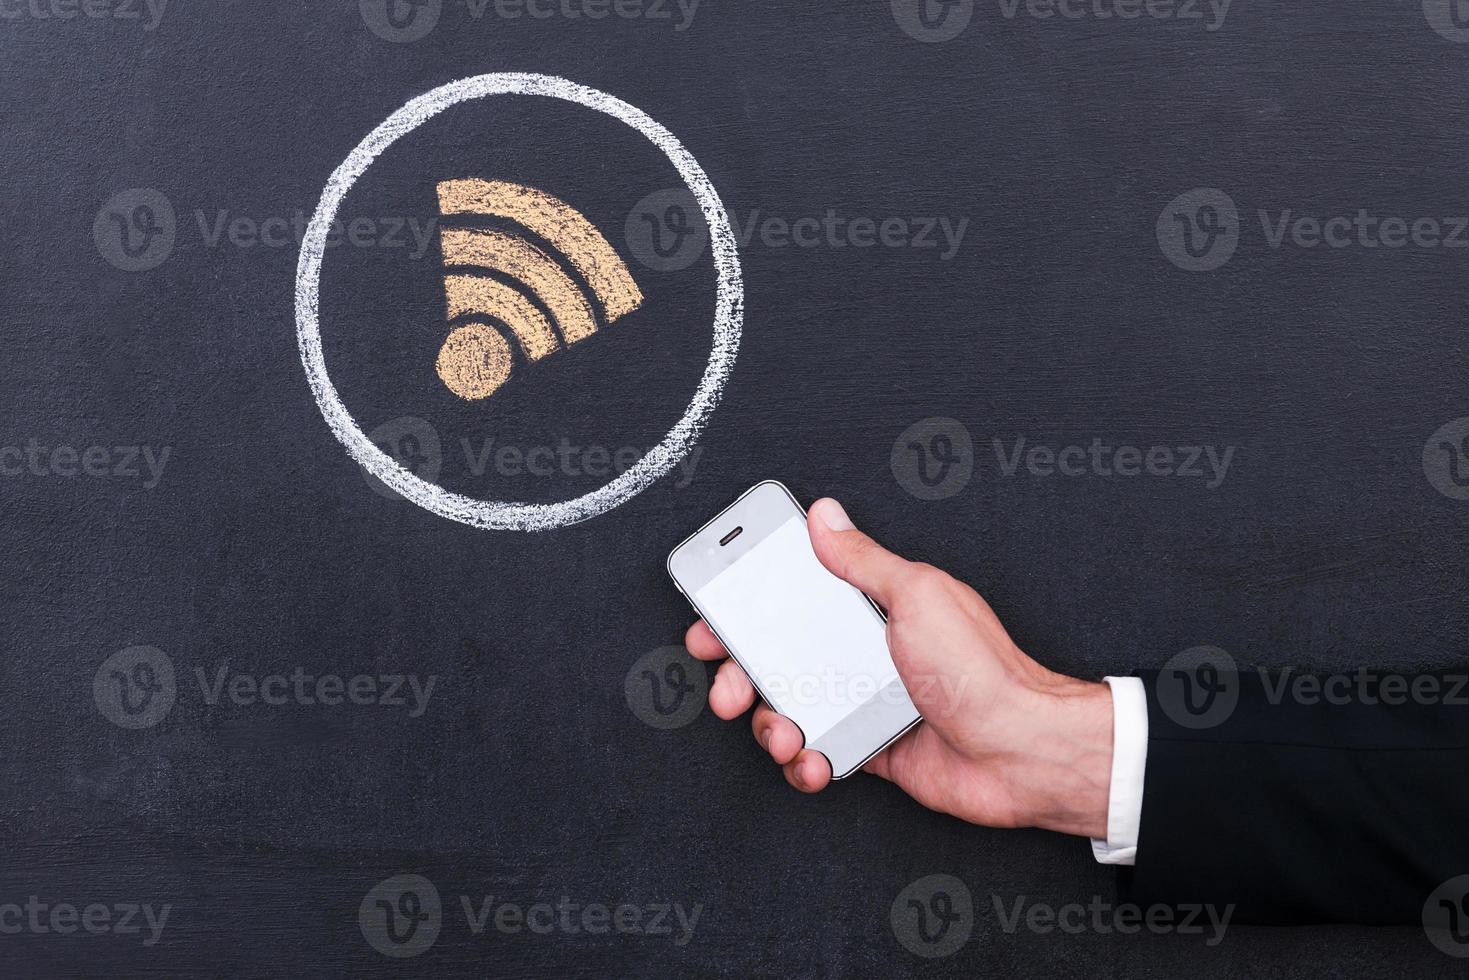 Verbinden de internetten. concept van menselijk hand- Holding telefoon tegen sharing symbool krijt tekening Aan schoolbord foto